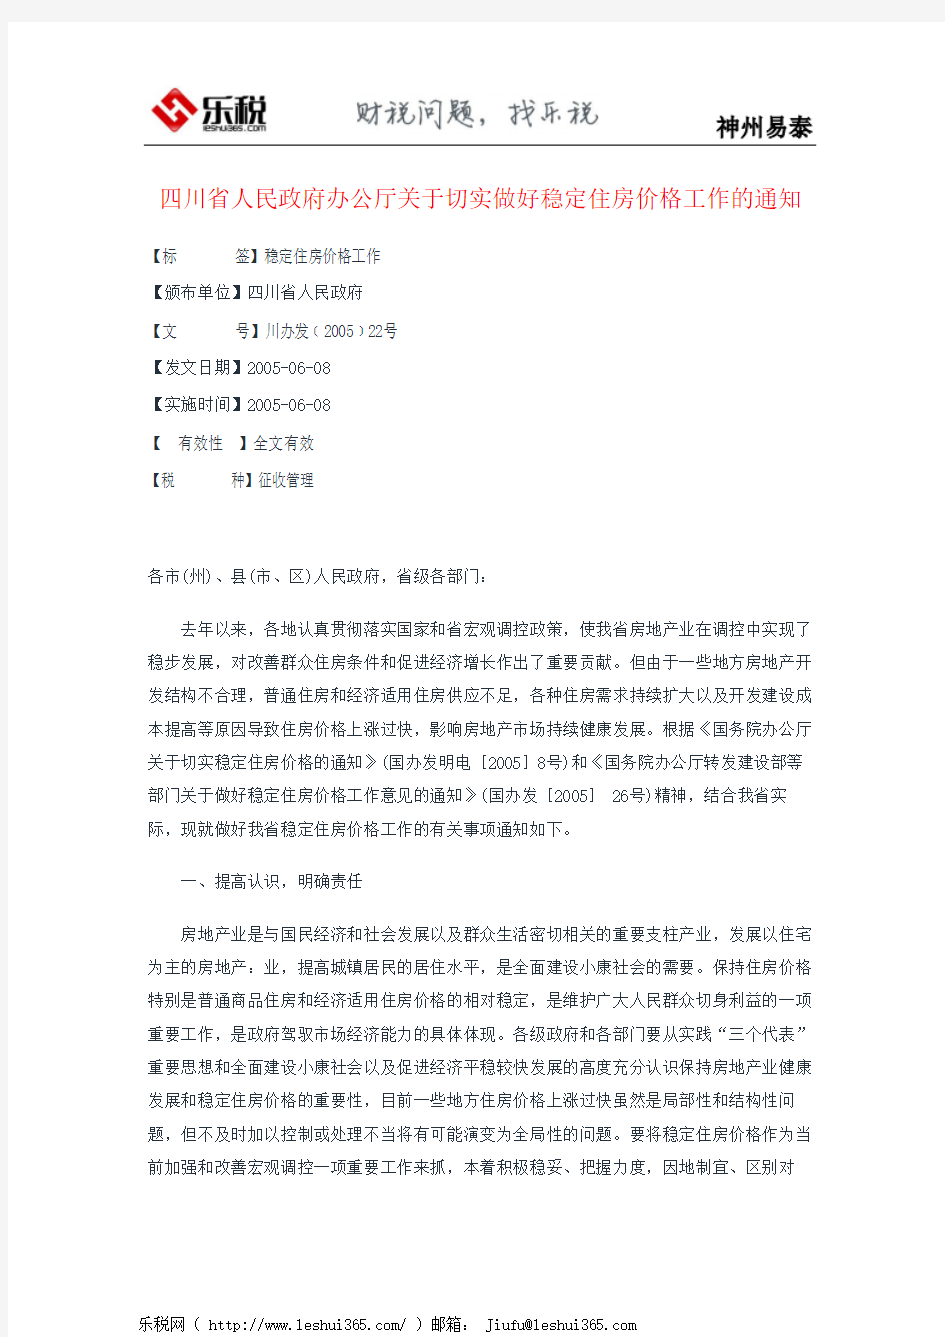 四川省人民政府办公厅关于切实做好稳定住房价格工作的通知